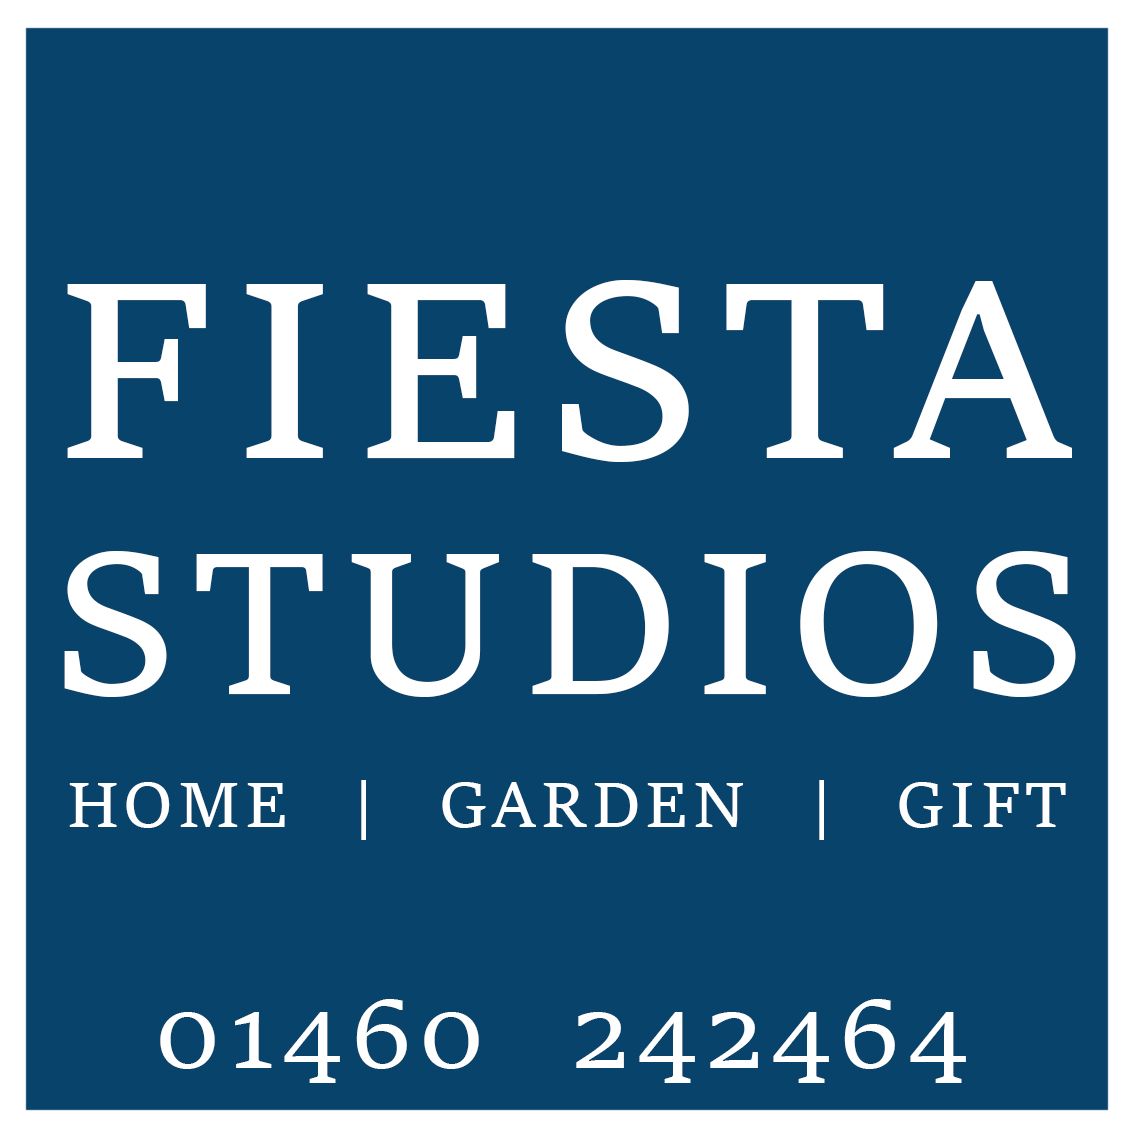 Fiesta Studios Ltd